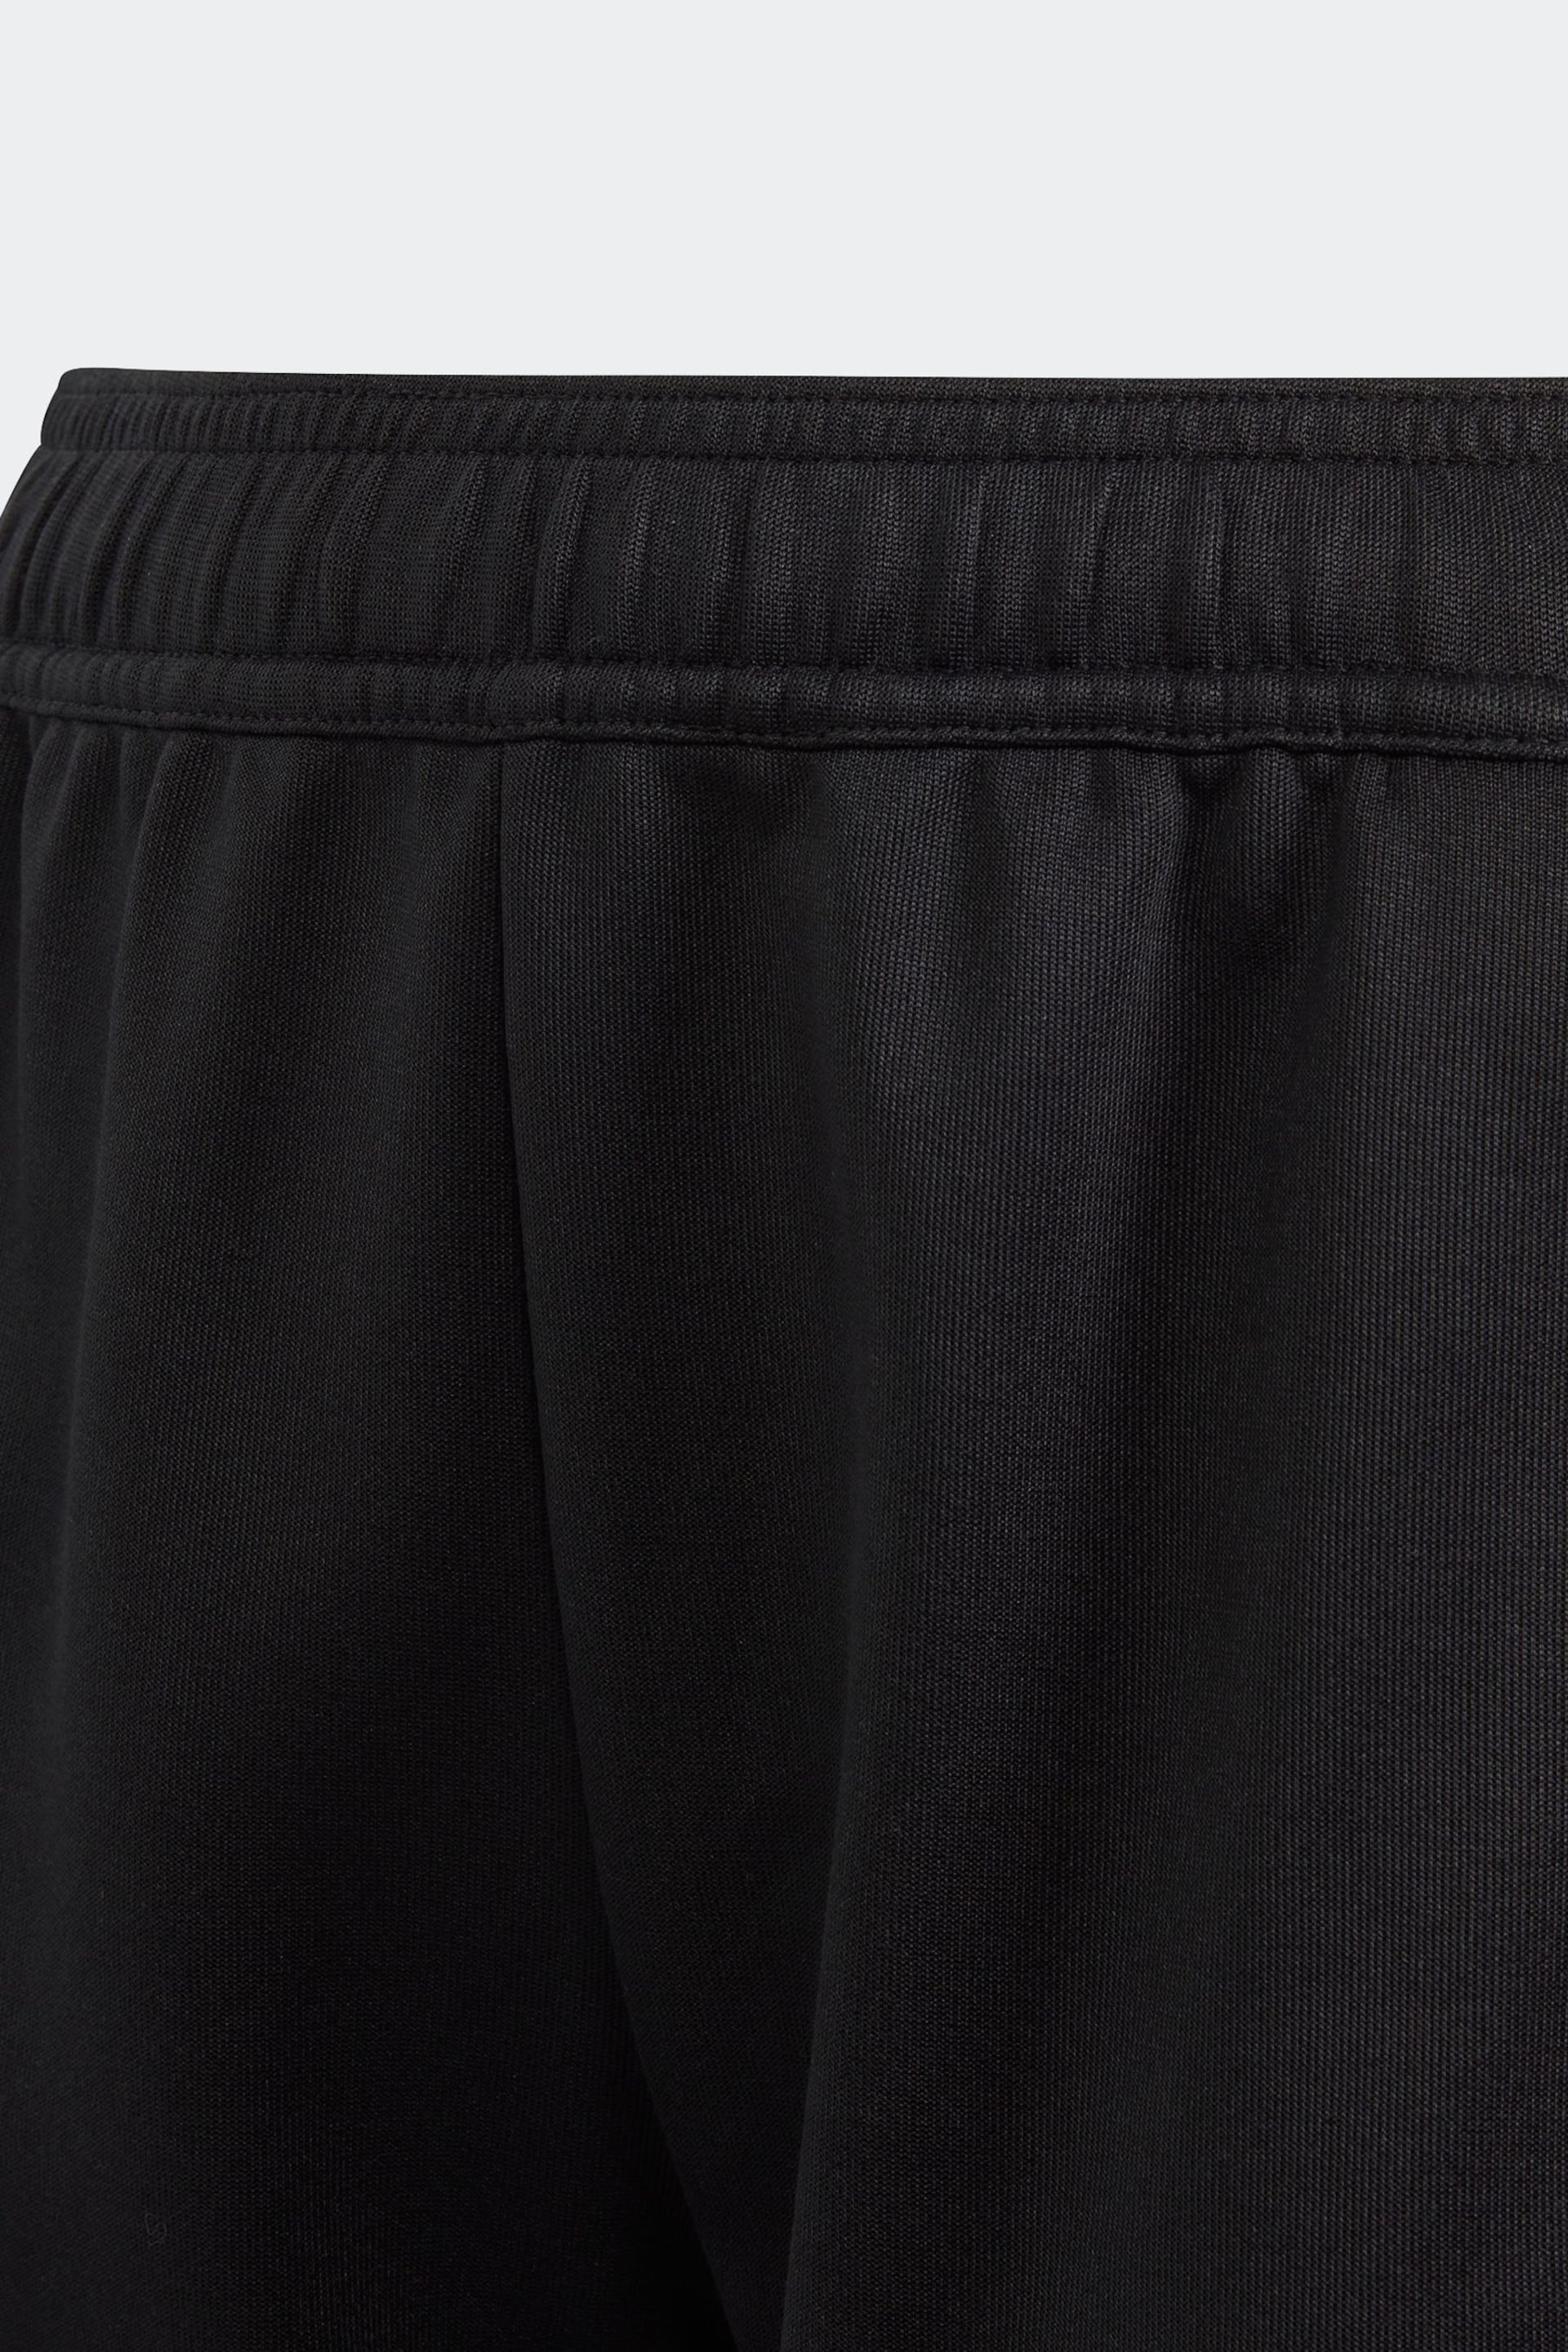 adidas Black Shorts - Image 5 of 5